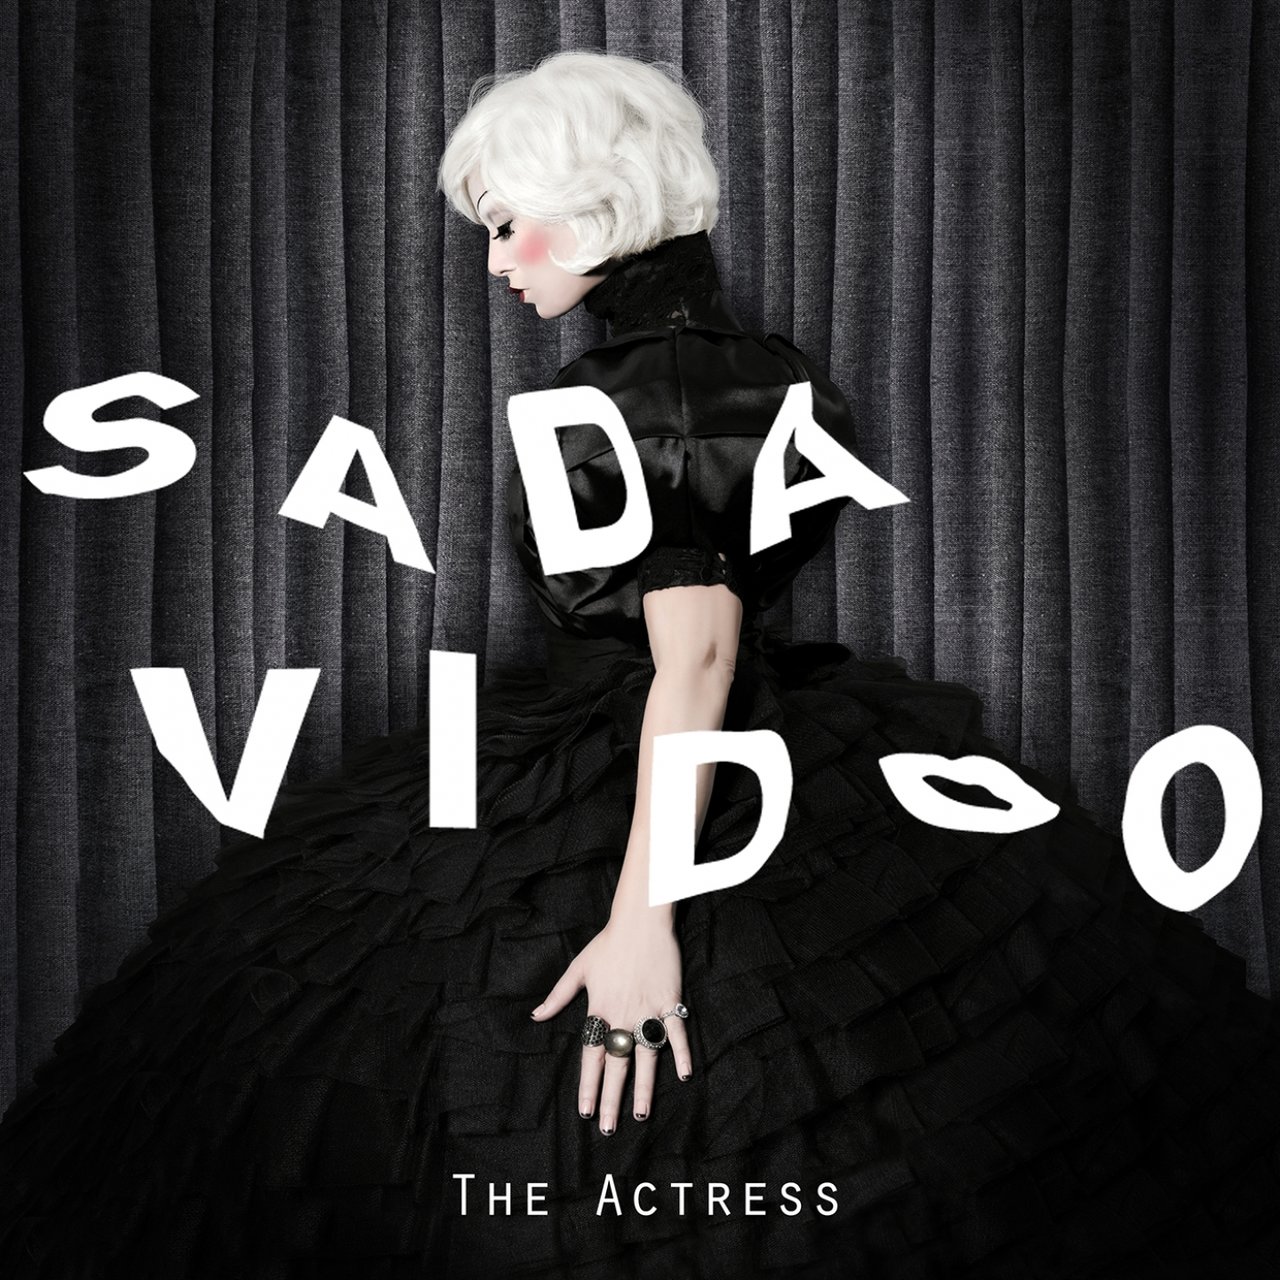 Sada Vidoo The Actress cover artwork